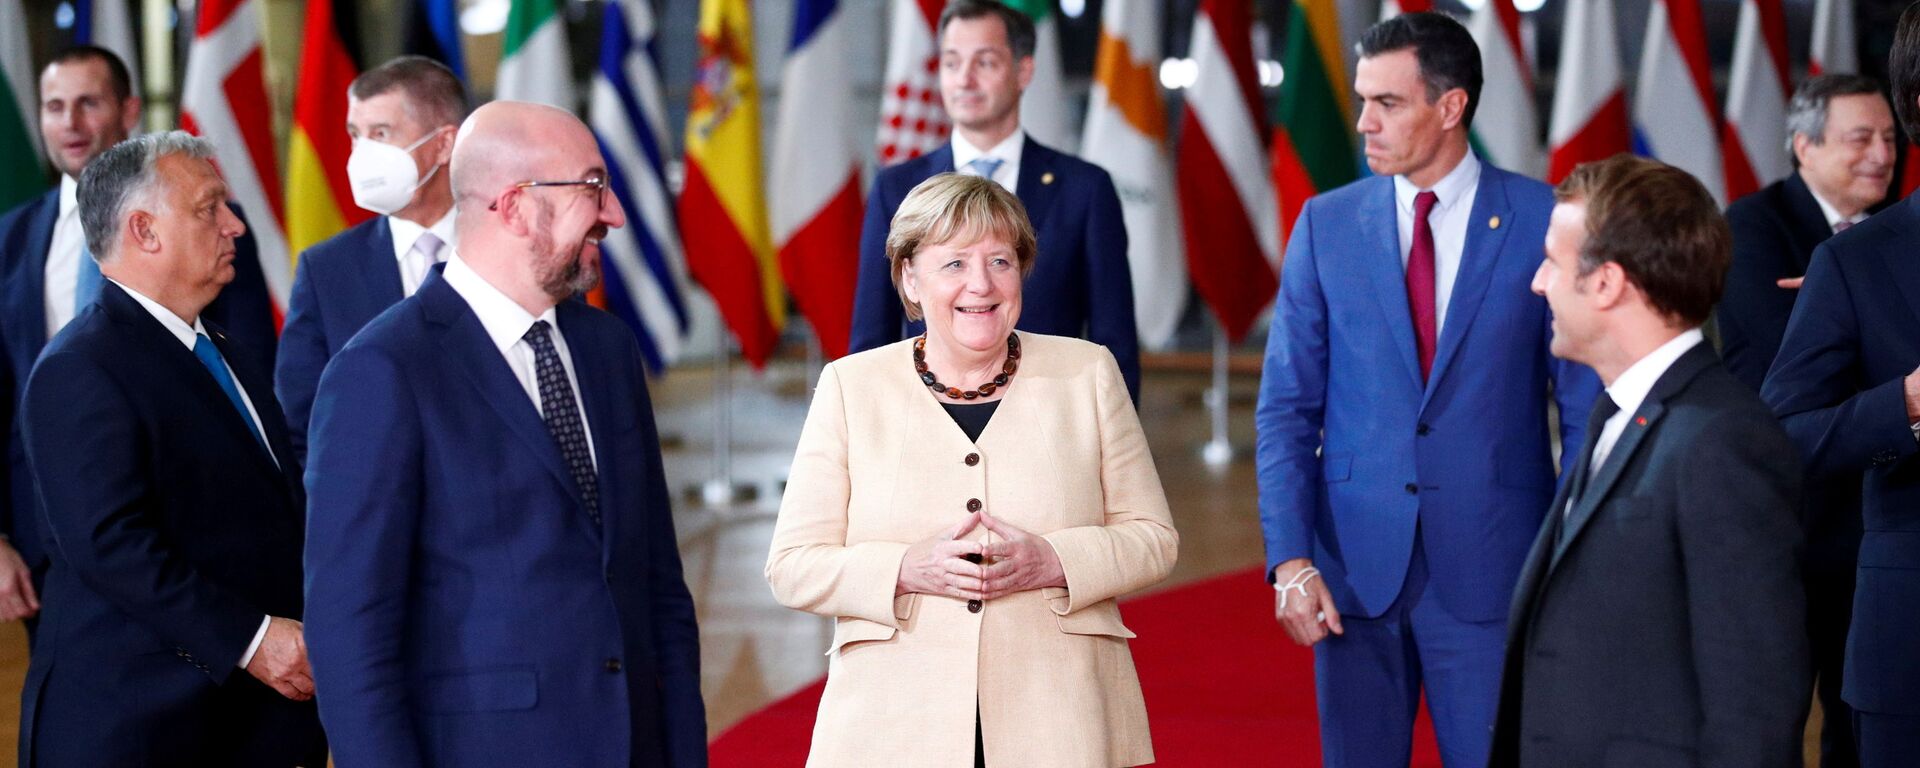 Президент Европейского совета Шарль Мишель, канцлер Германии Ангела Меркель, президент Франции Эммануэль Макрон на саммите ЕС - Sputnik Латвия, 1920, 22.10.2021